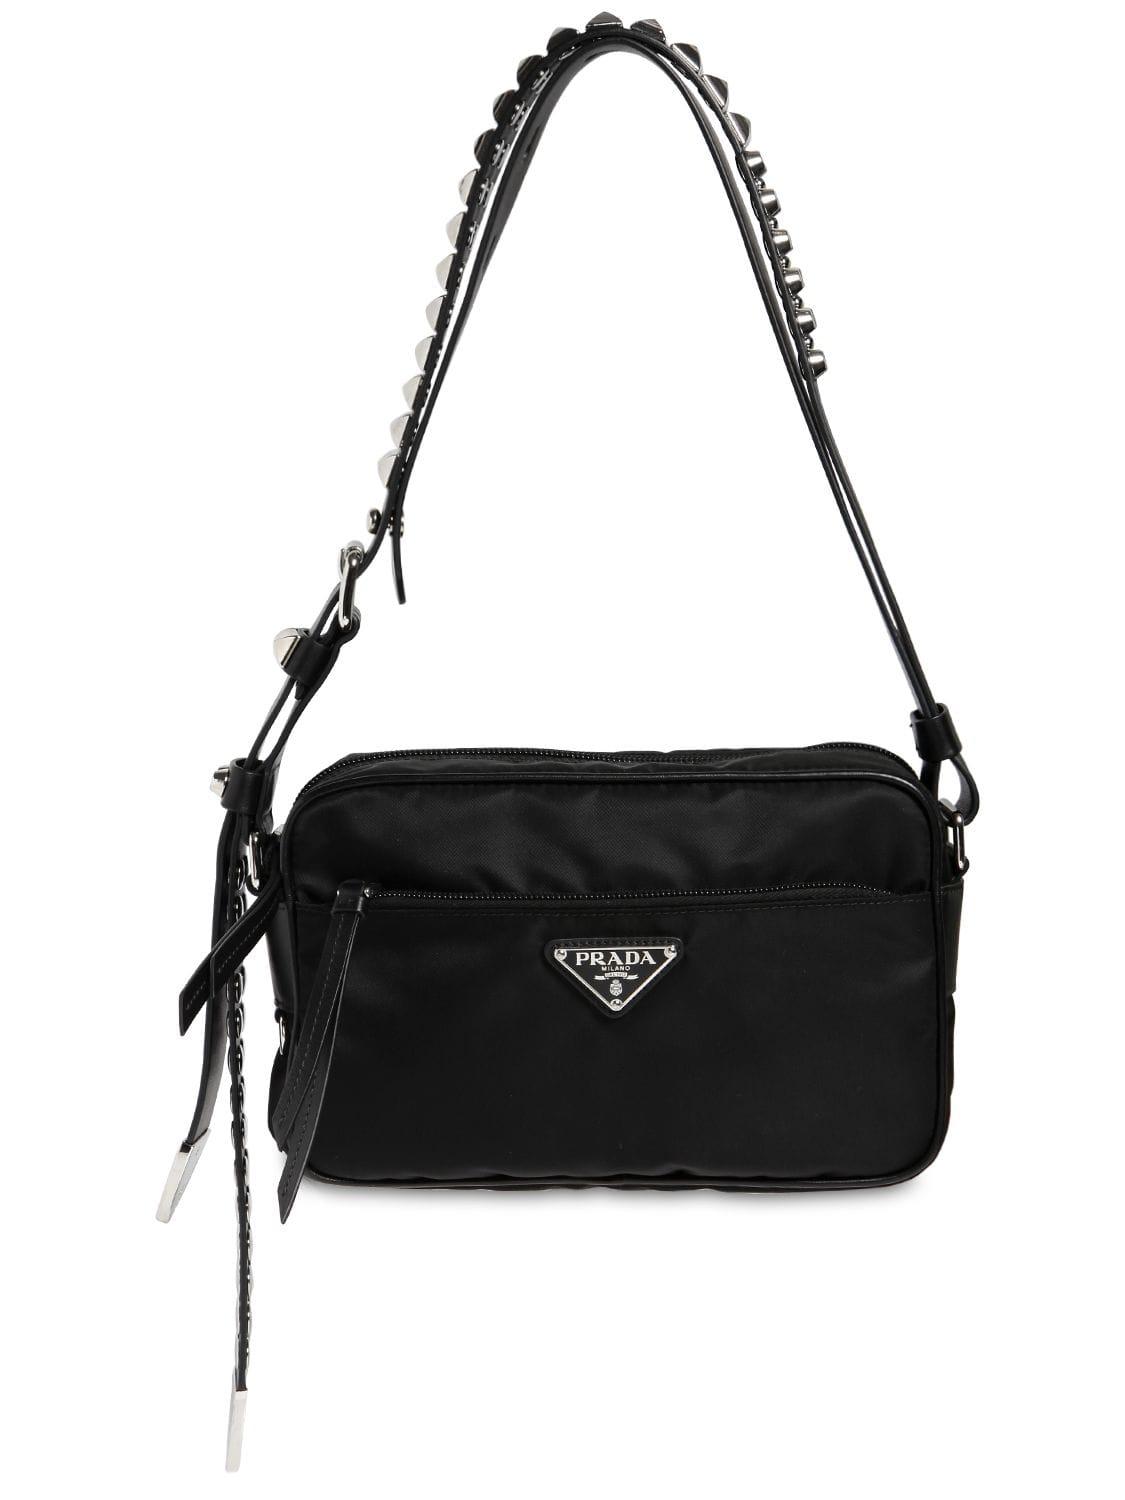 Prada Nylon Camera Bag W/ Studded Strap in Black